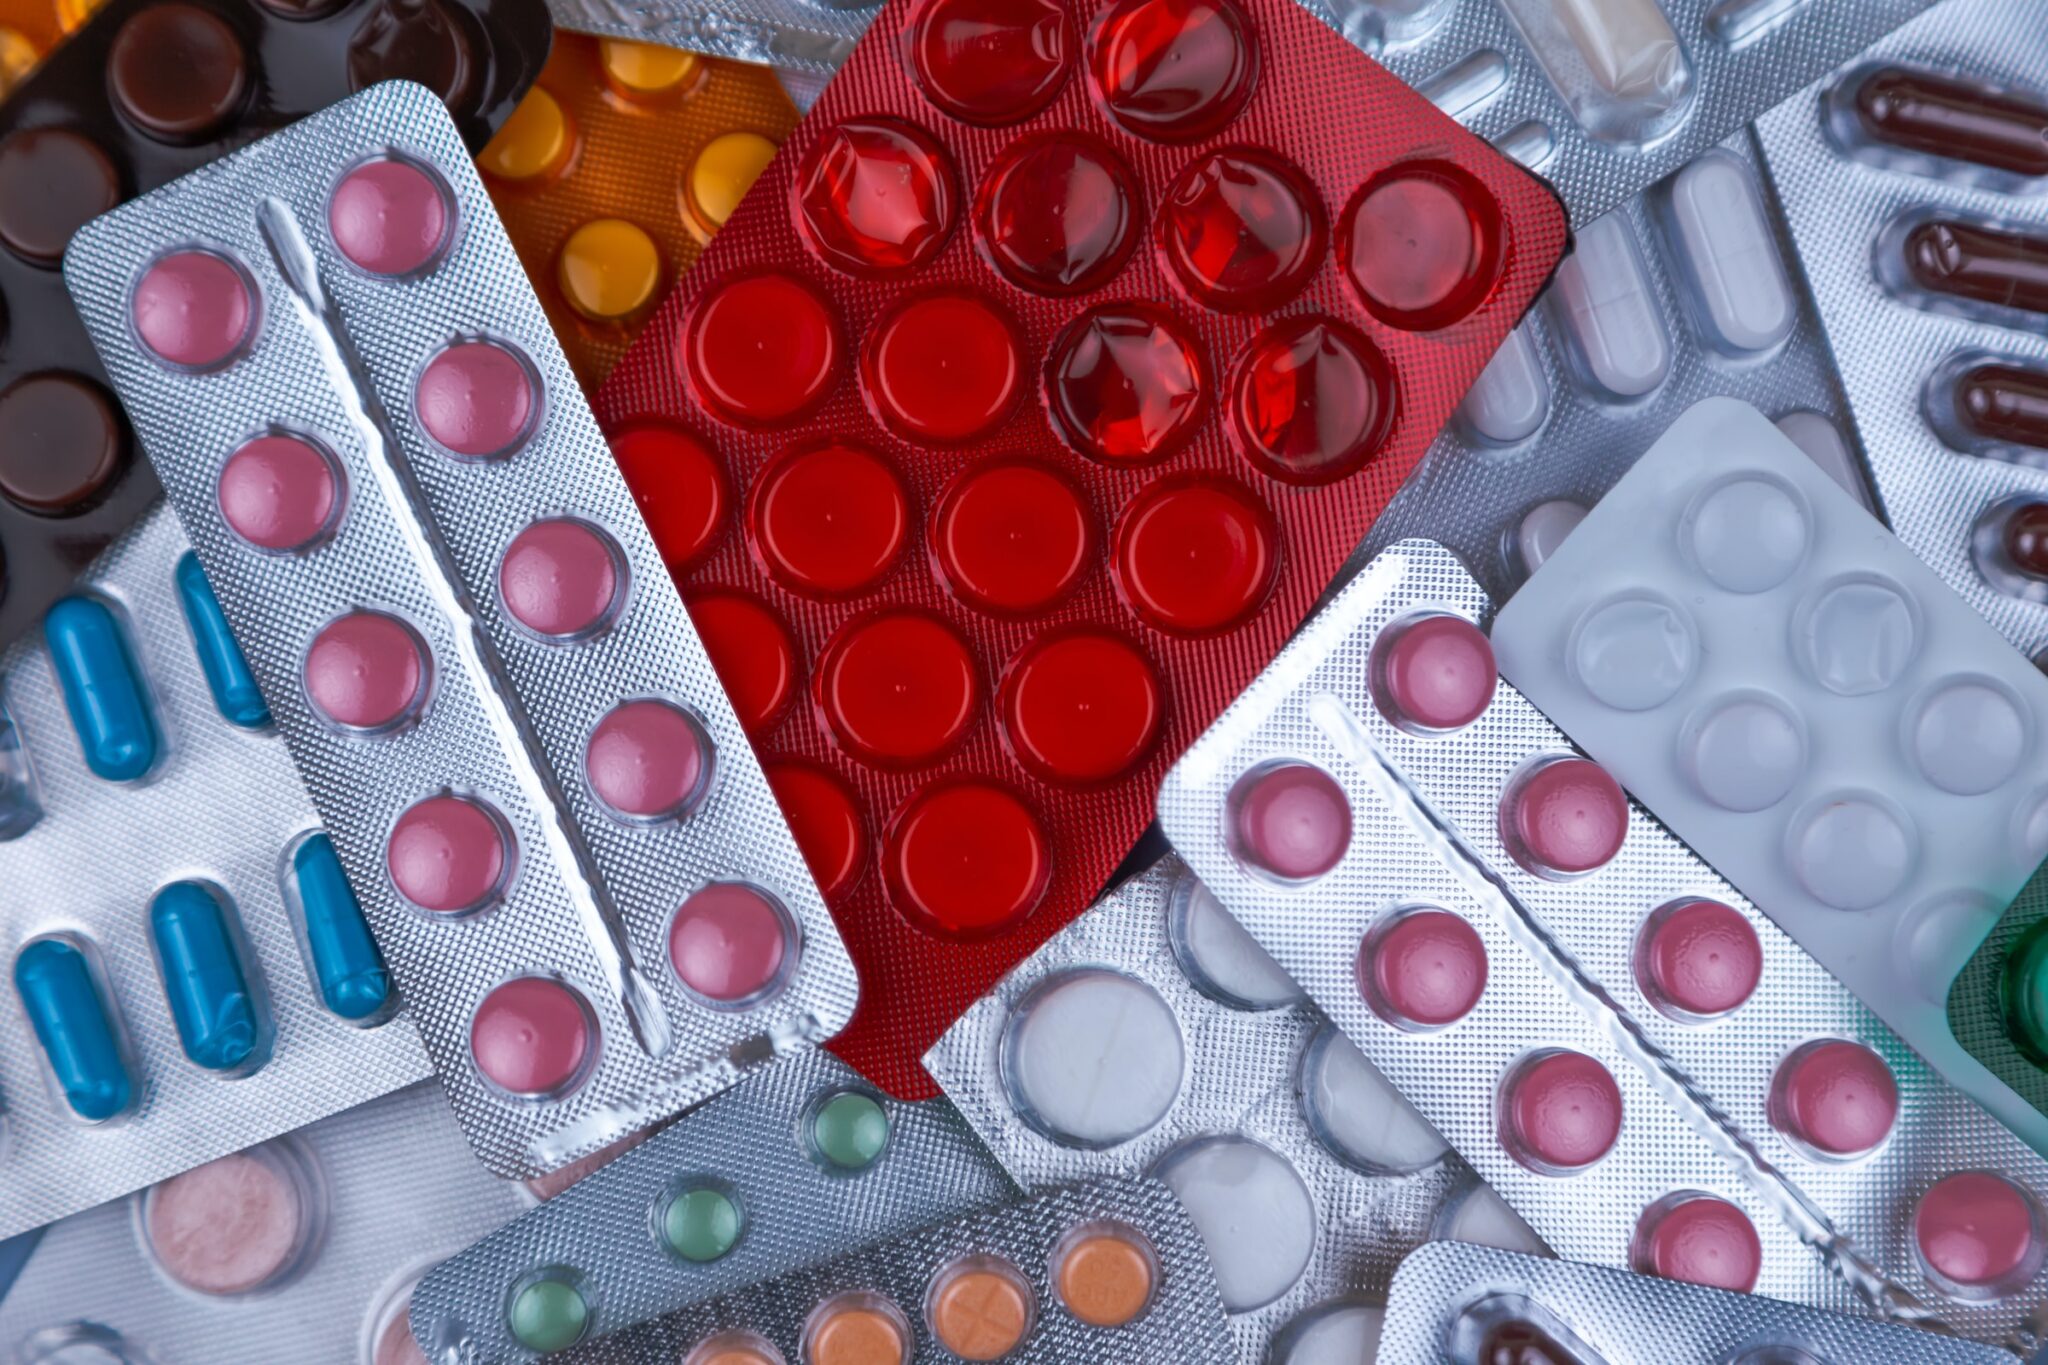 Ein Haufen medizinischer Pillen in weiss, blau und anderen Farben. Pillen in Plastikverpackung. Konzept der Gesundheitsfürsorge und Medizin.